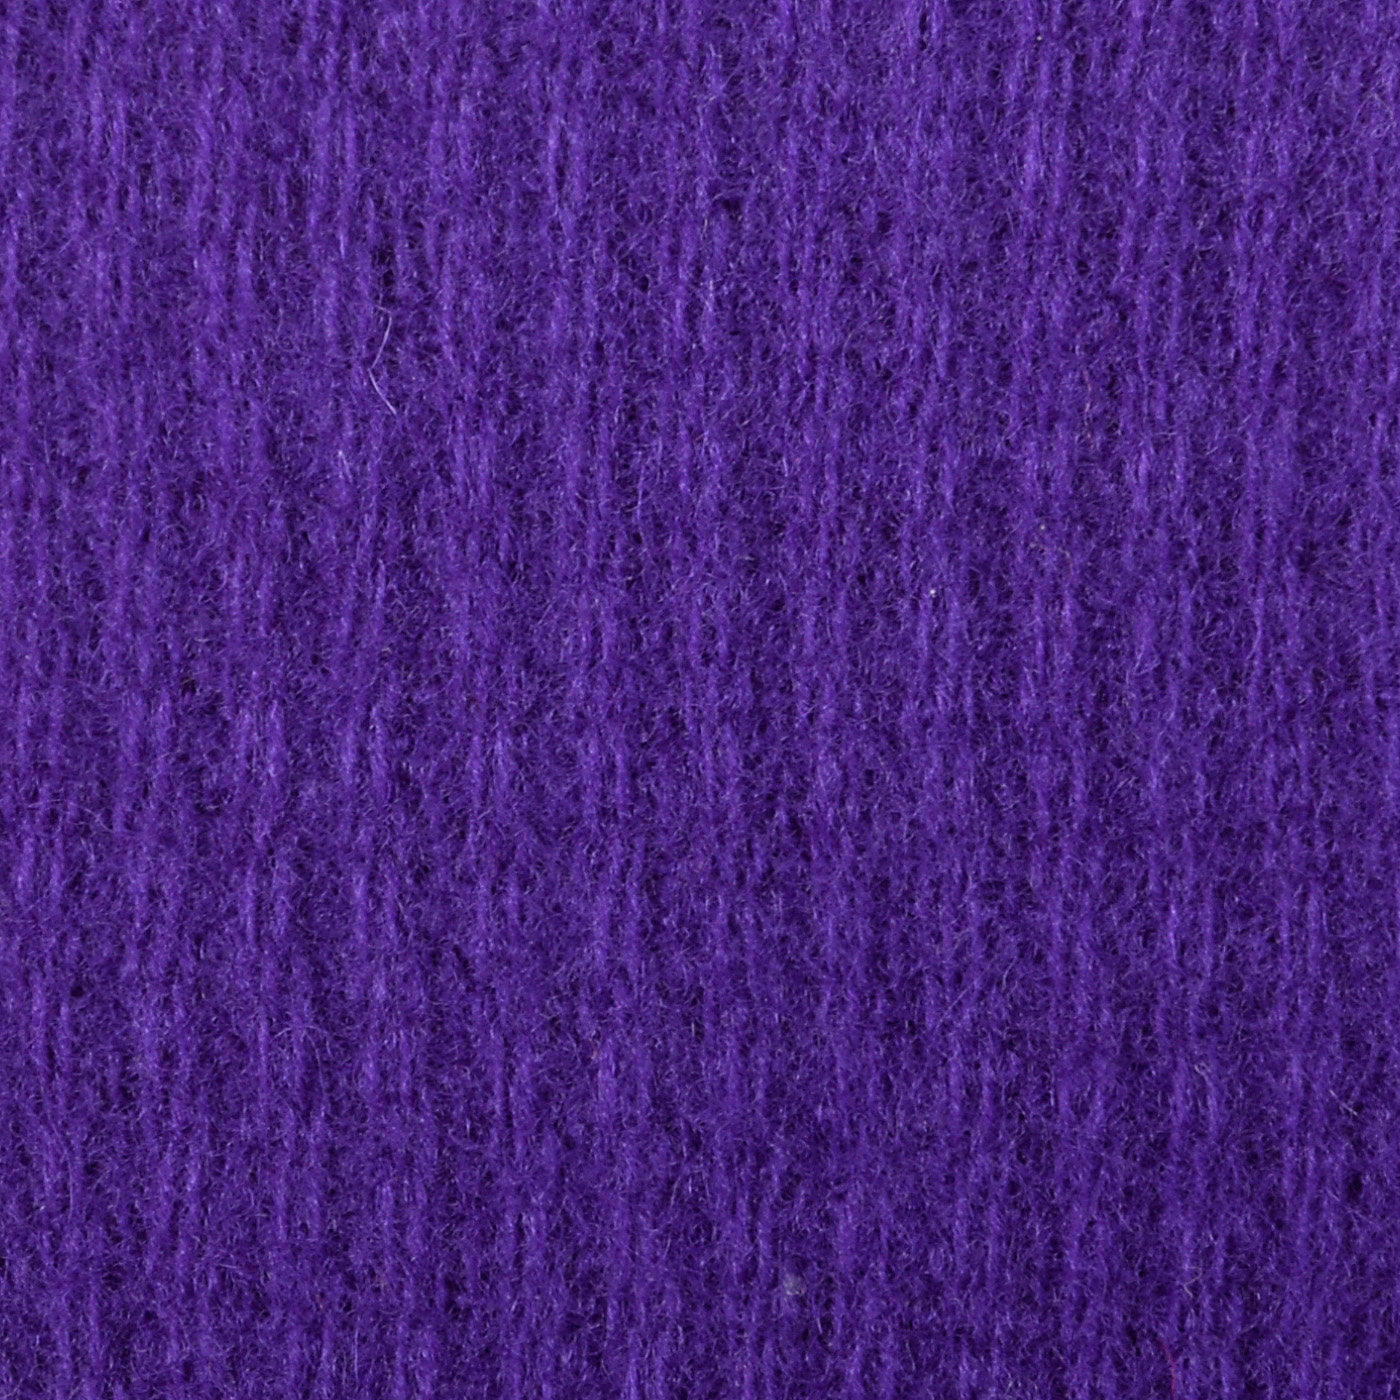 1950s Purple Knit Pencil Dress